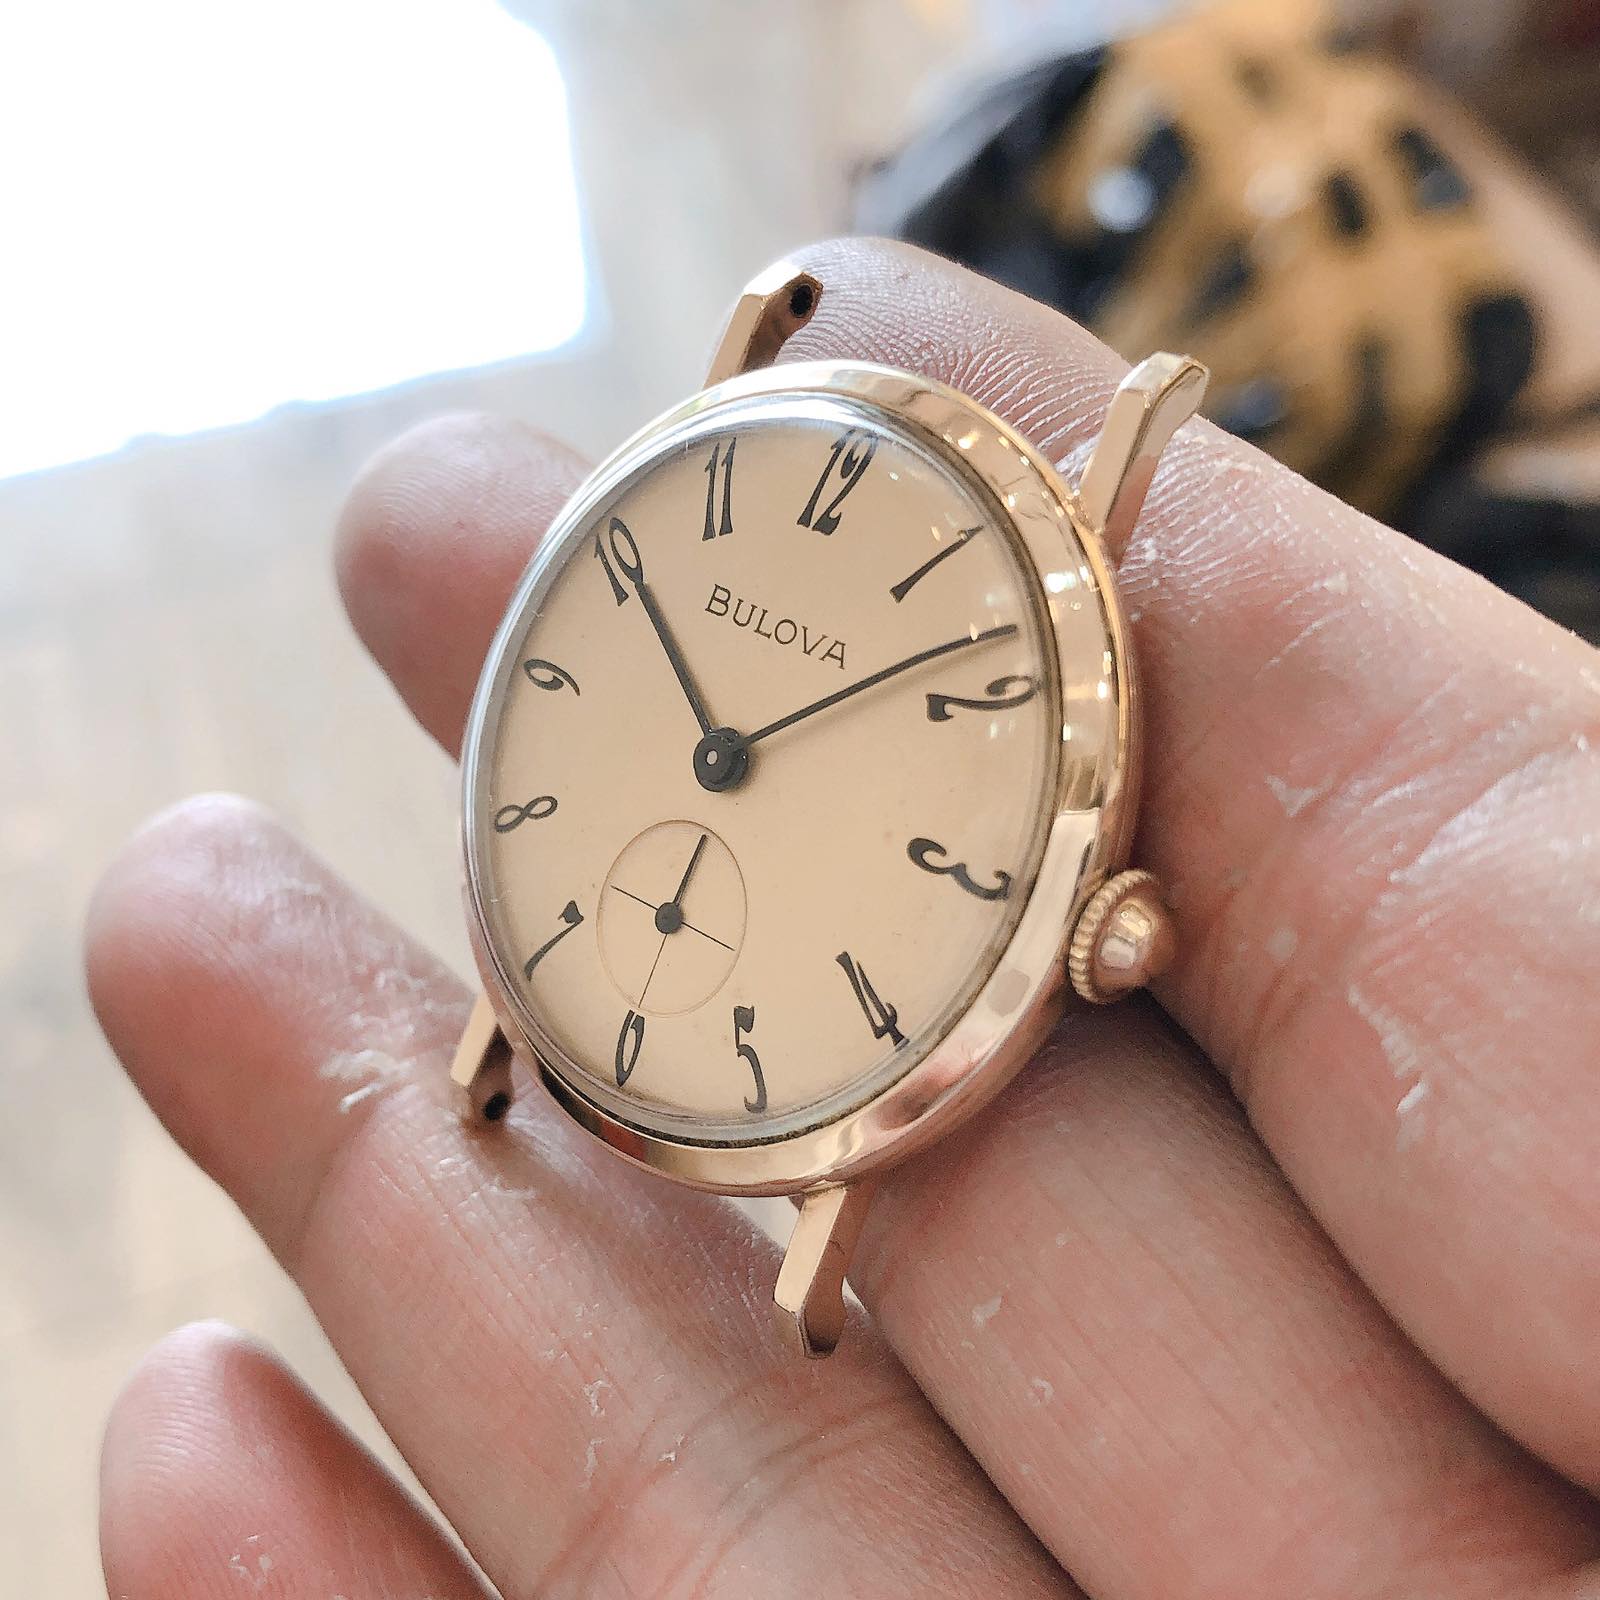 Đồng hồ cổ Bulova mẫu siêu mỏng lên dây chính hãng thuỵ sỹ